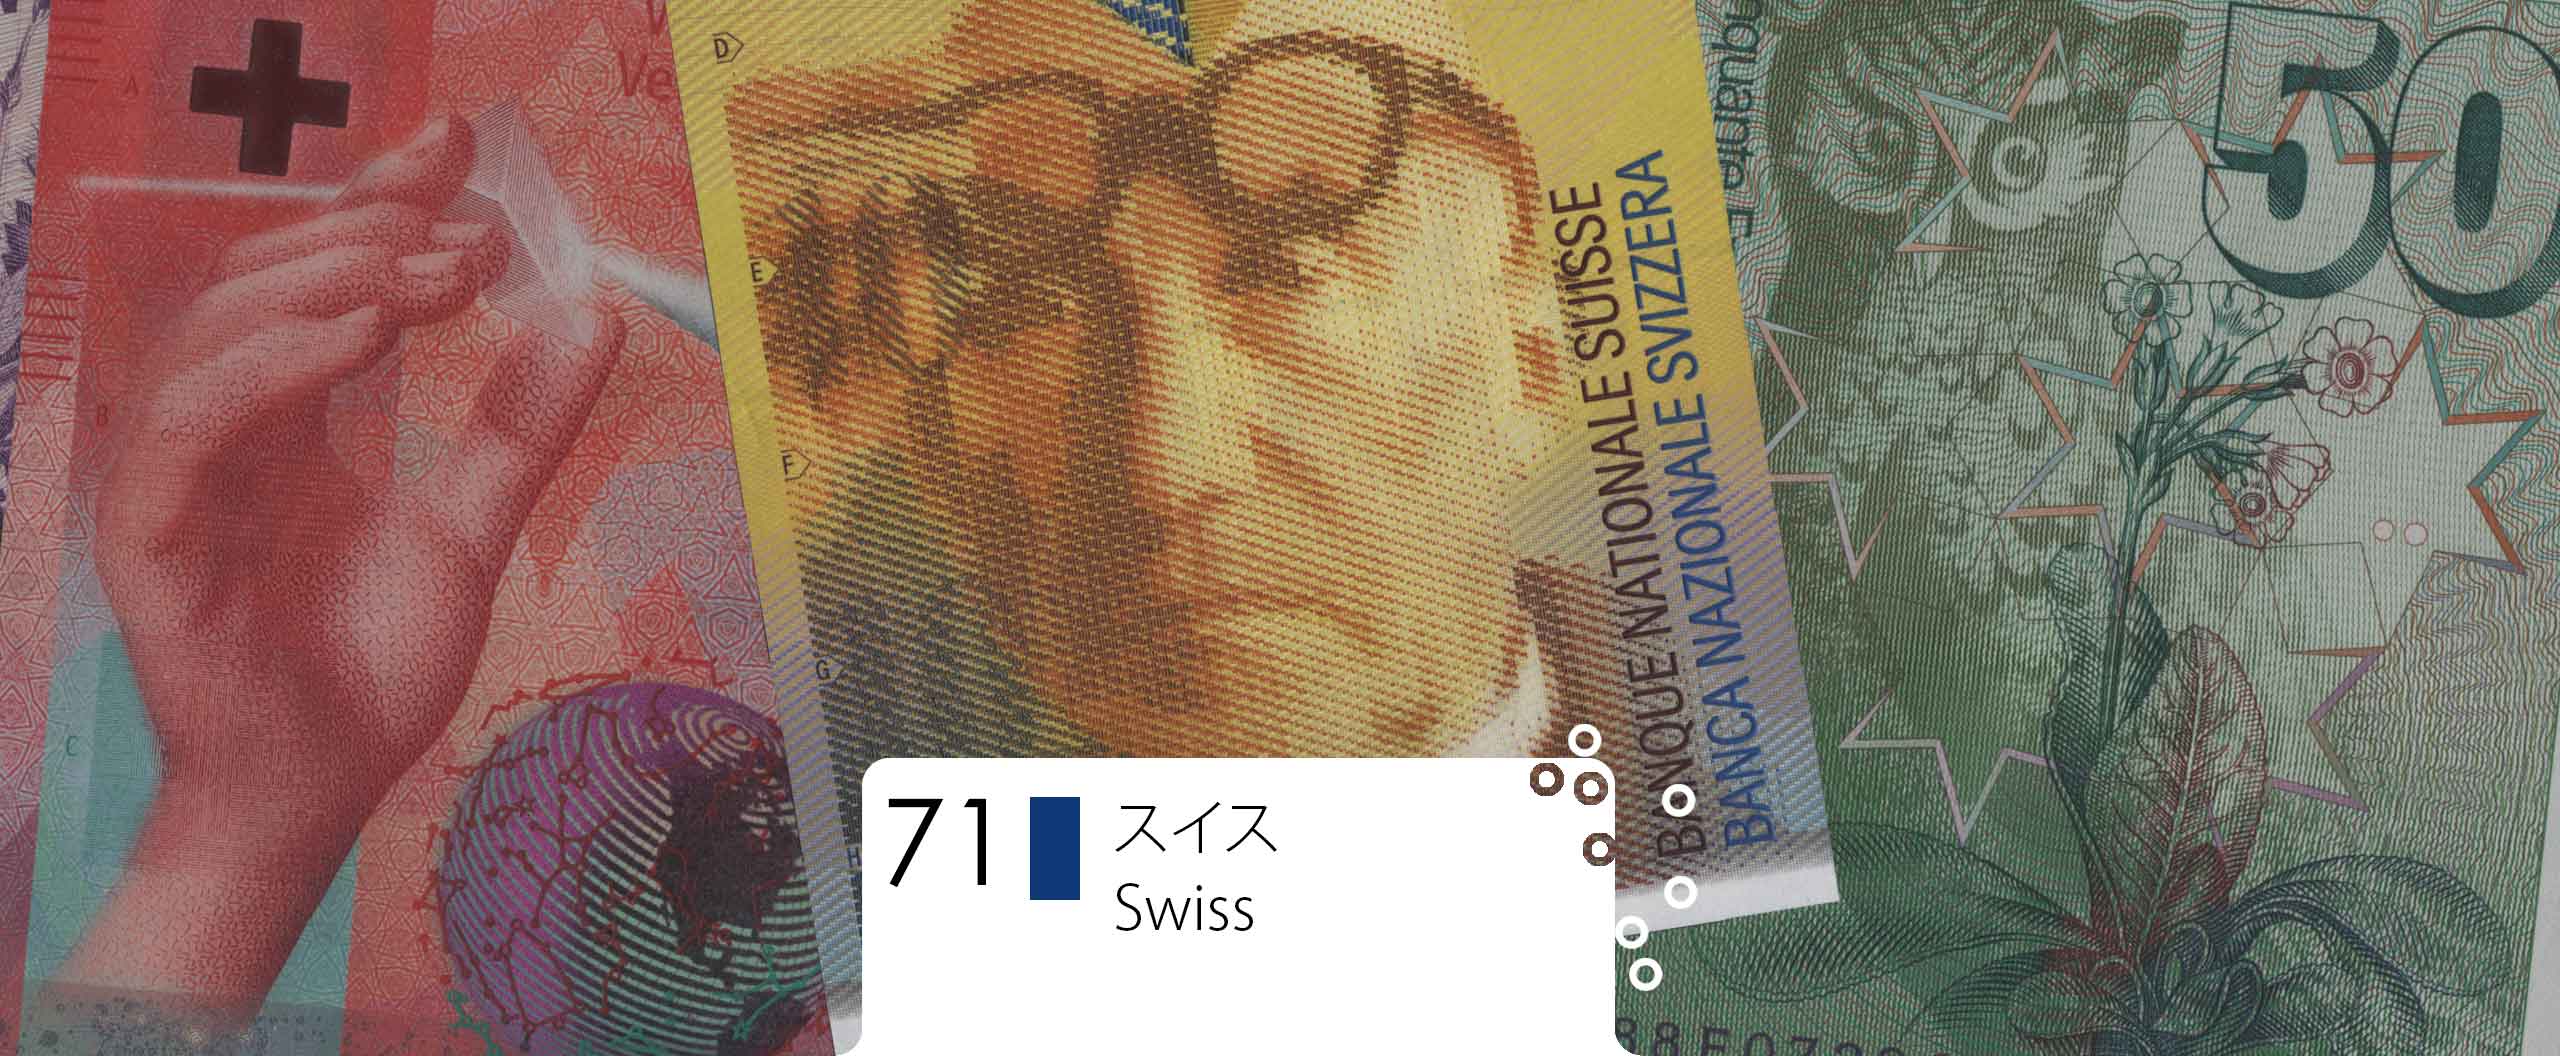 スイス・フラン Swiss Francs (CHF) / 貨幣博物館カレンシア Currencia.net